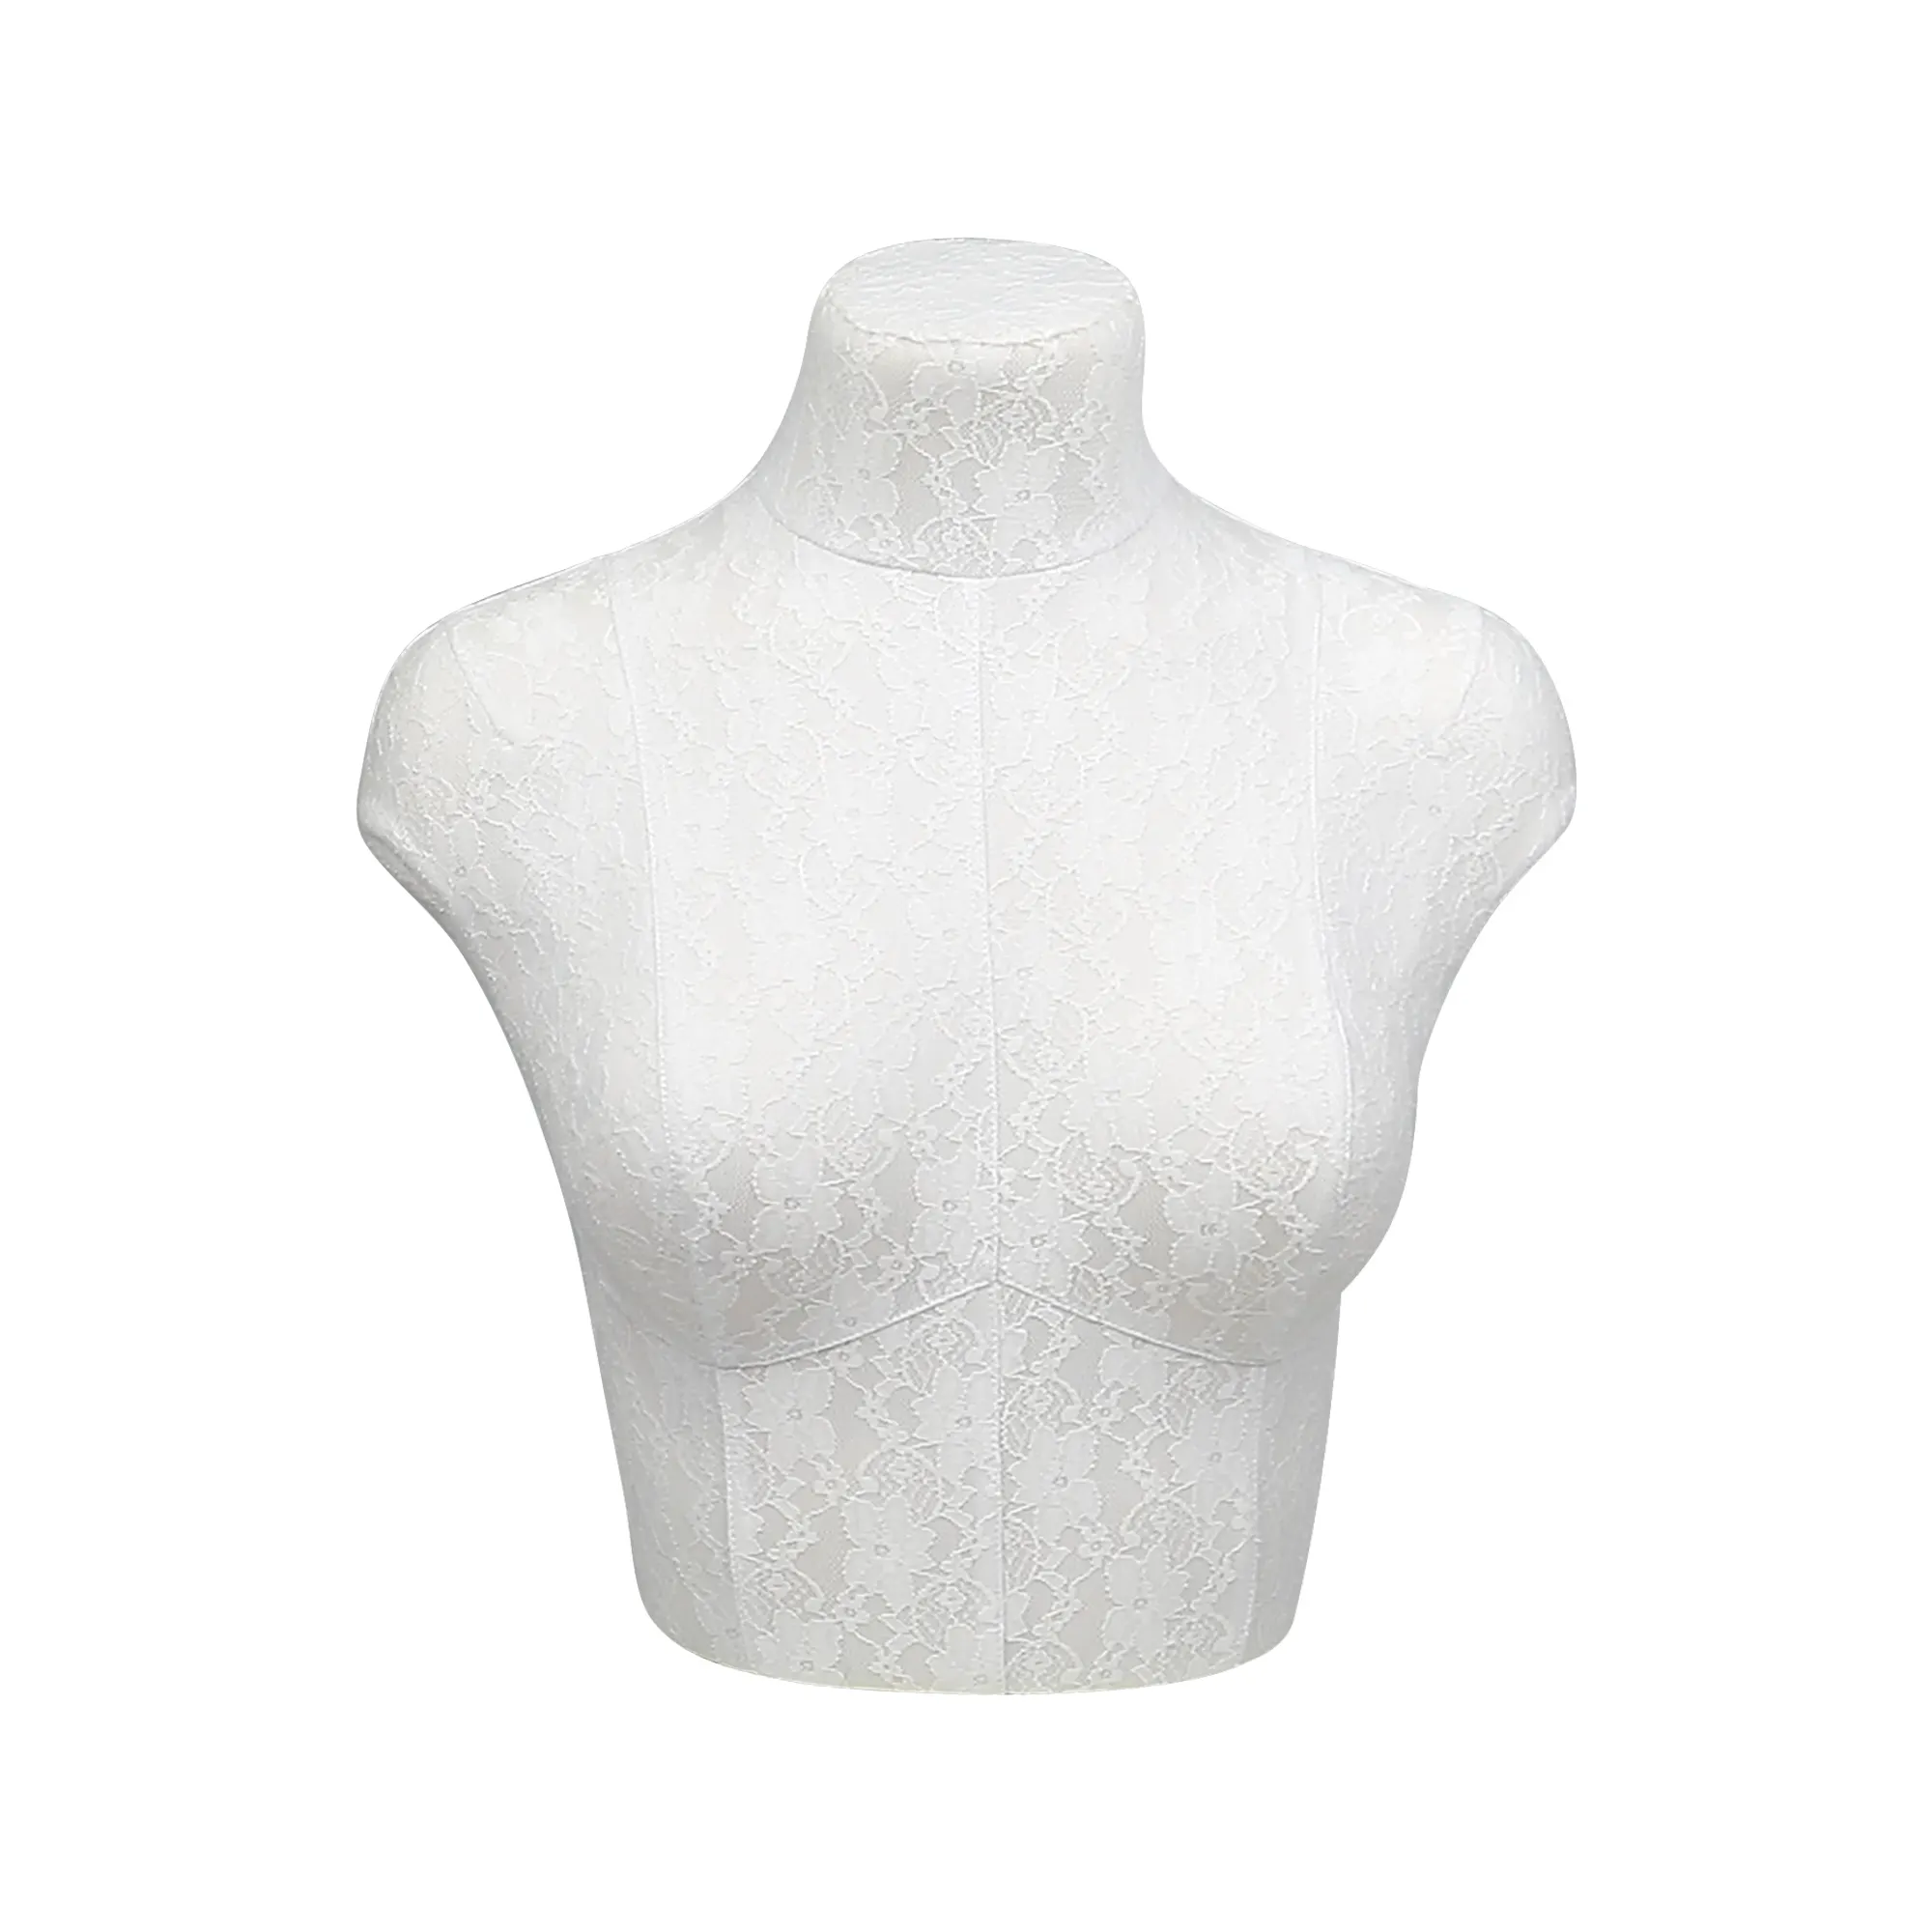 Weibliche Büste Form Torso Halbkörper Lady Schaufenster puppe Dummy Kleid Form Under Wear Modell für BH-Bezug mit Spitze Weiß